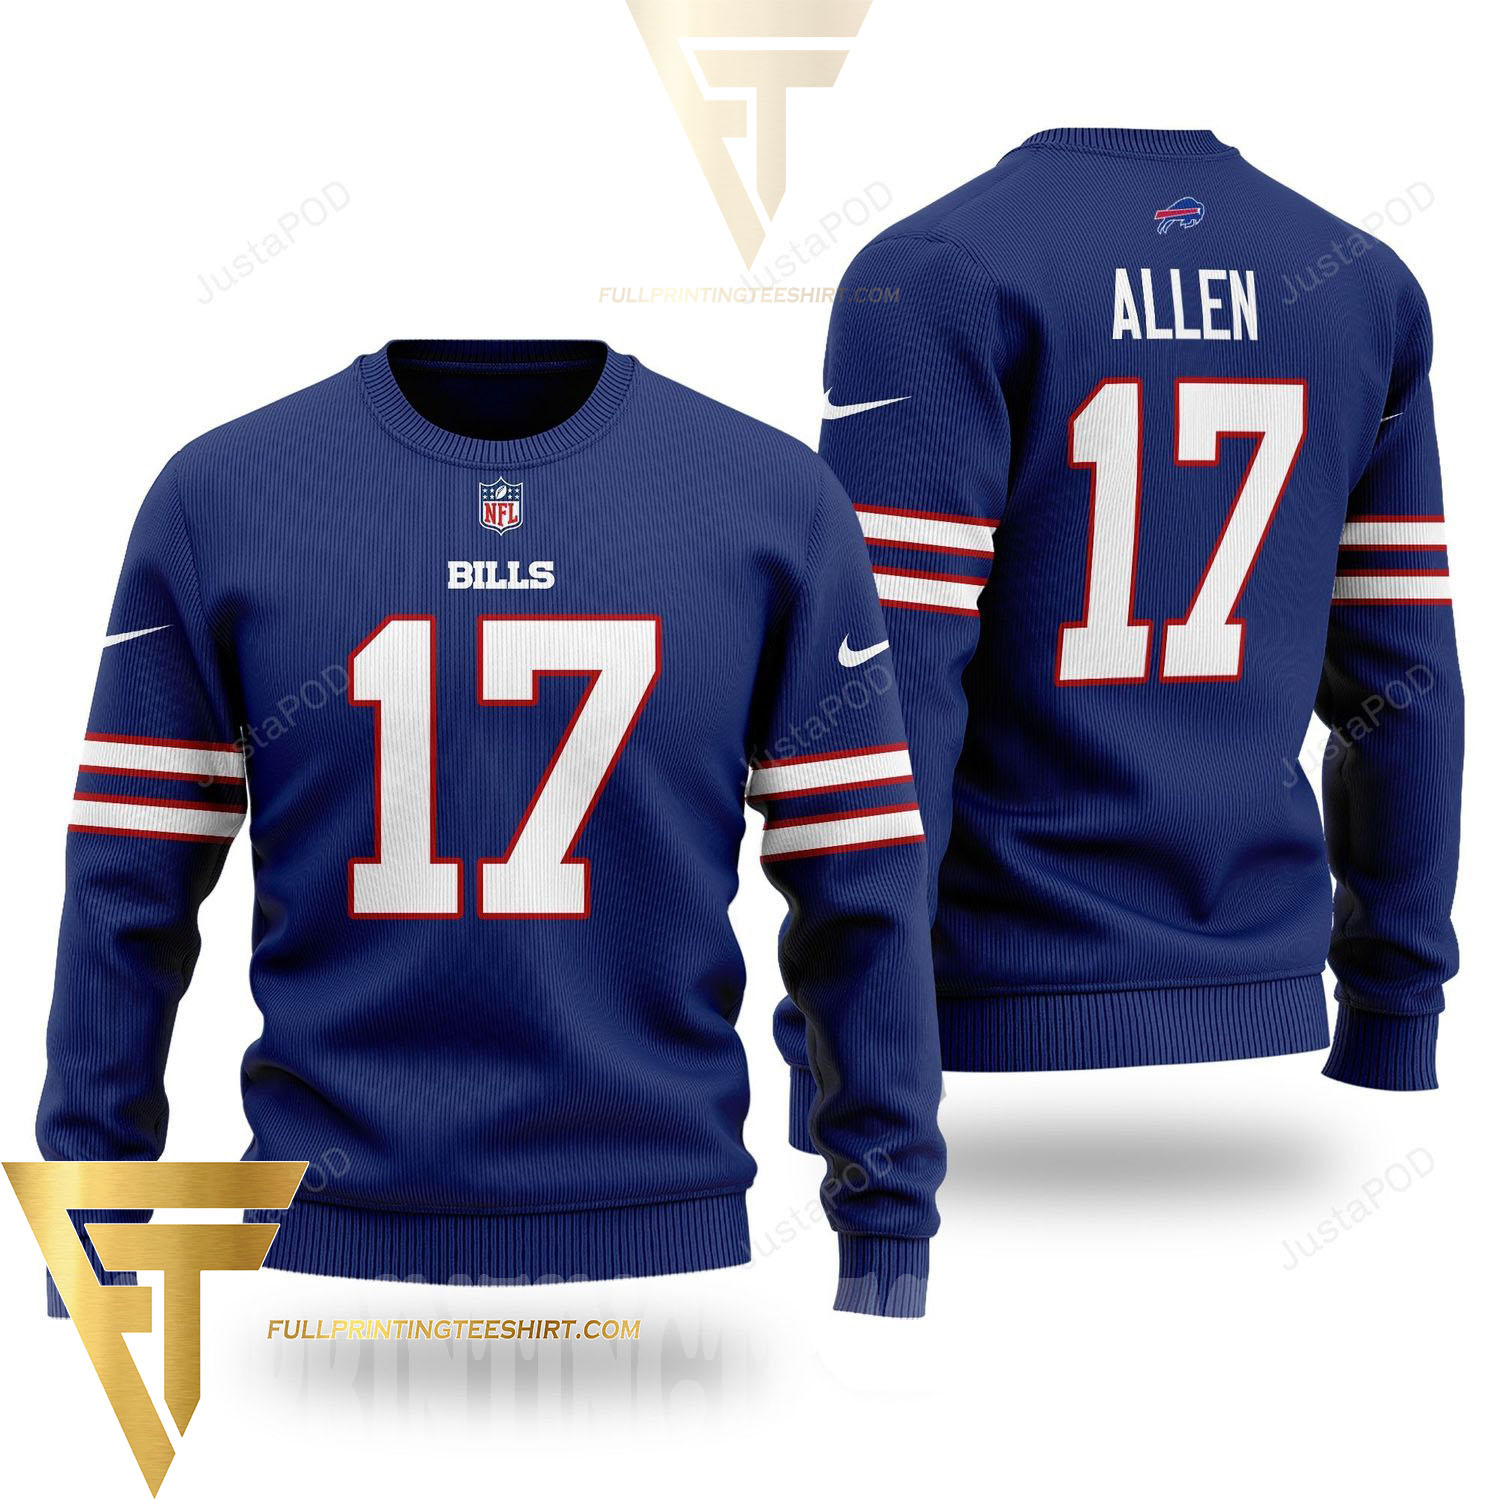 Top-selling item] NFL Buffalo Bills Josh Allen Knitting Pattern